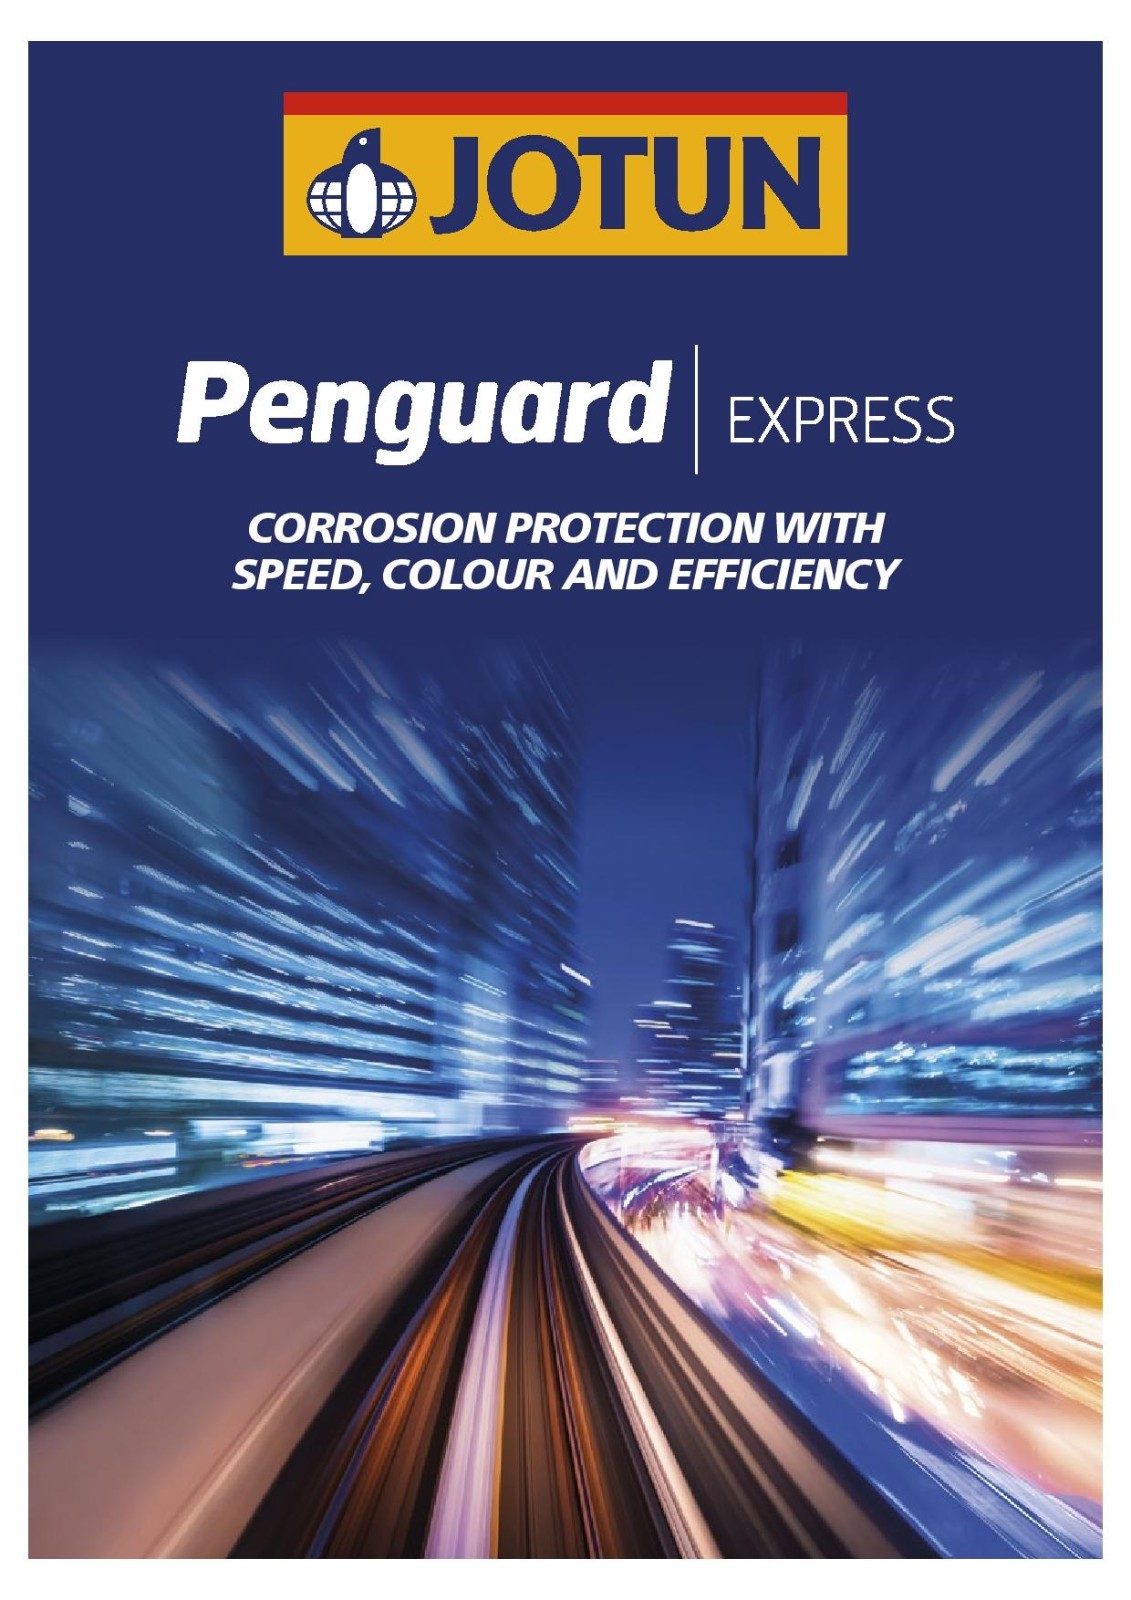 download free penguard express